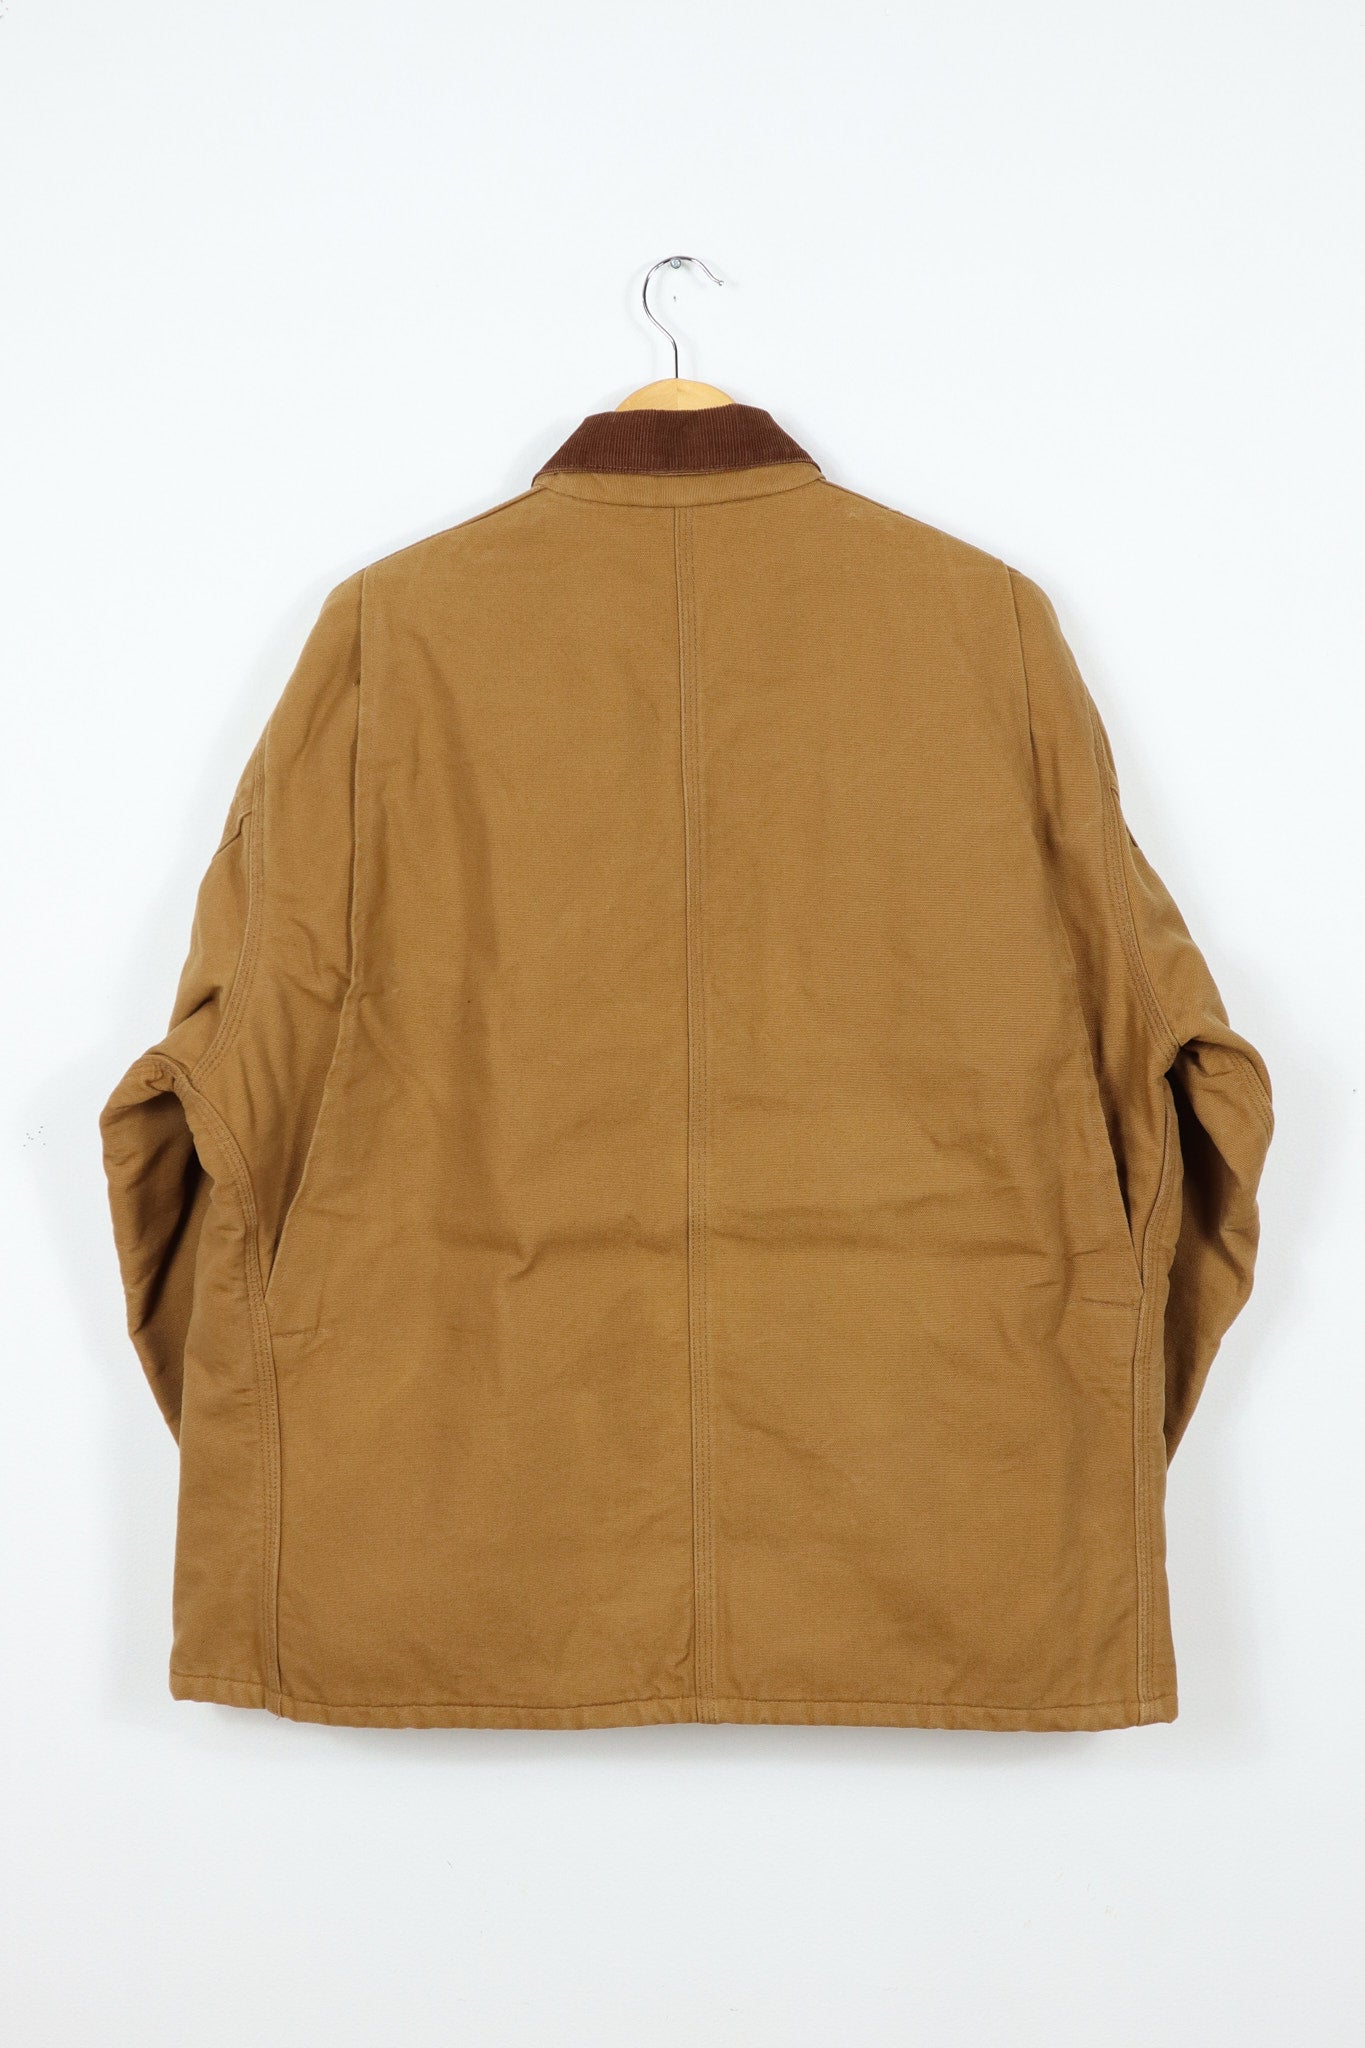 Vintage Carhartt Button-Down Jacket